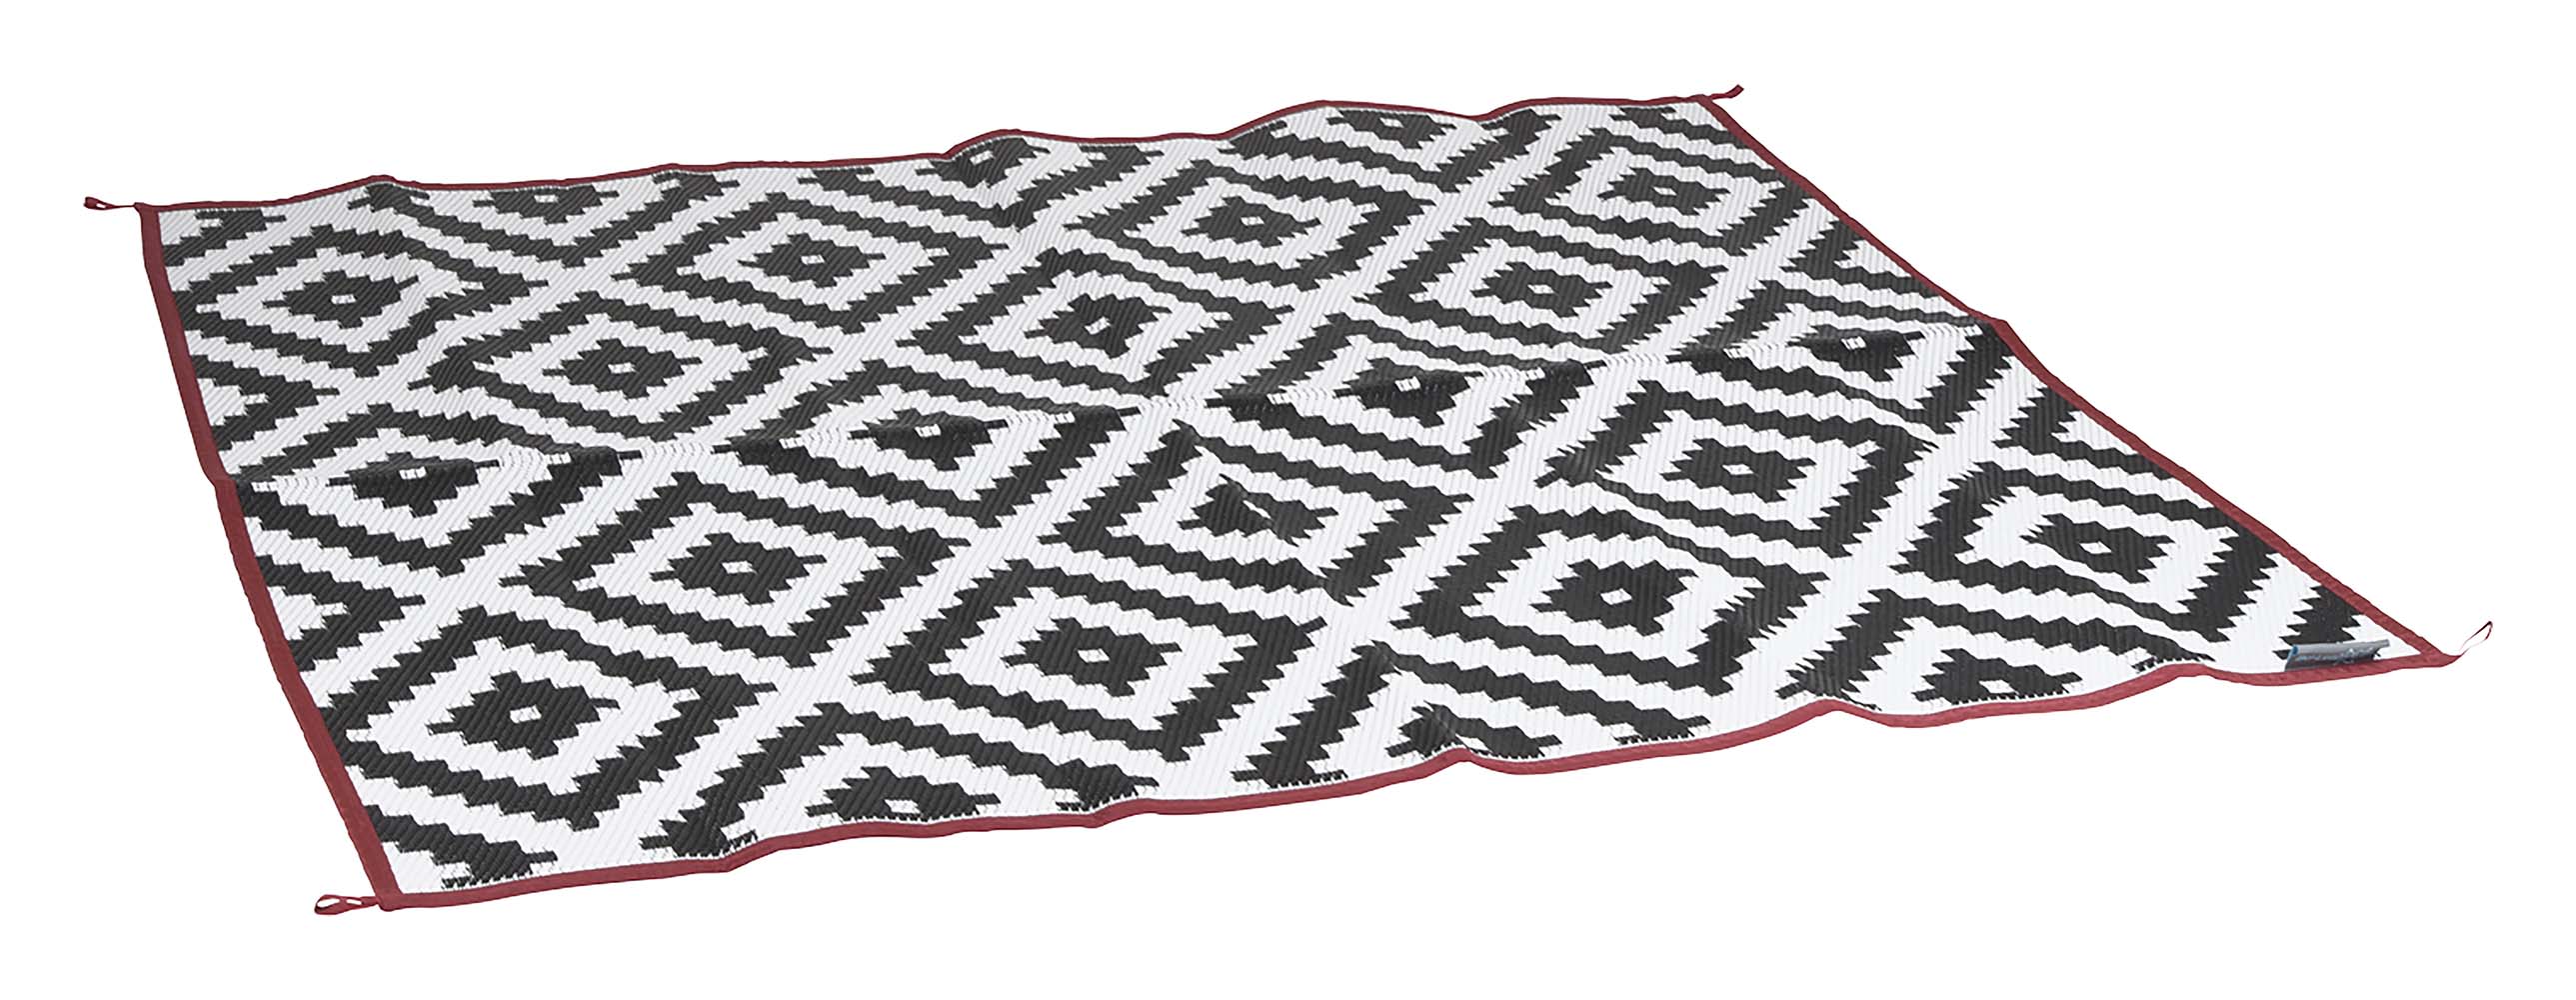 4271025 Una alfombra muy elegante. Decorado por 2 lados, por lo que este paño se puede utilizar por ambos lados. La alfombra es impermeable y resistente al moho, por lo que es ideal como manta de picnic, en la tienda (delantera), debajo del porche, en la playa, en el jardín o en el parque. Fabricado en polipropileno 100% ligero y de alta calidad de 380 gr/m². Esta alfombra tiene una vida útil prolongada gracias al tratamiento UV. Viene en una práctica bolsa de transporte.